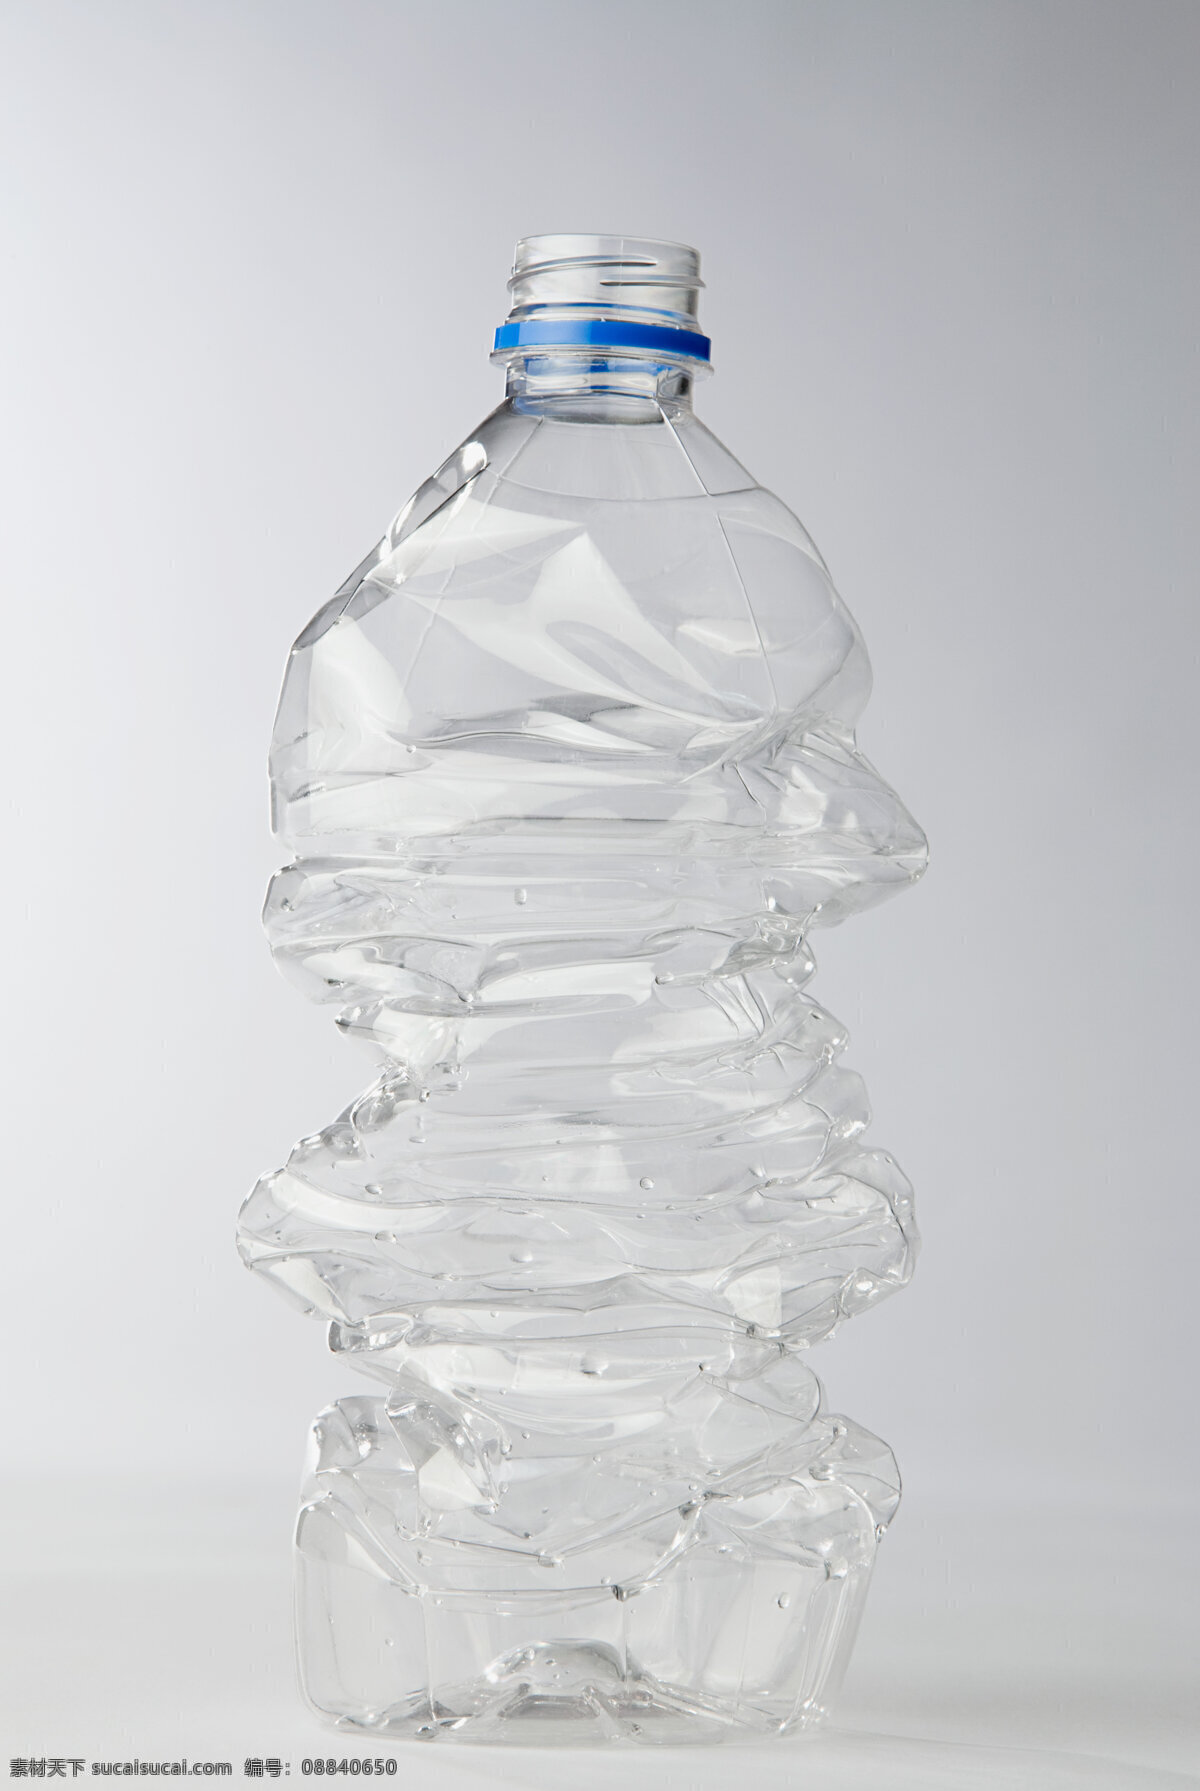 挤压 塑料 瓶子 特写 横构图 在室内 没人 环境 保护 透明 图象 空瓶子 塑料瓶子 瓶子特写 高清图片 生活用品 生活百科